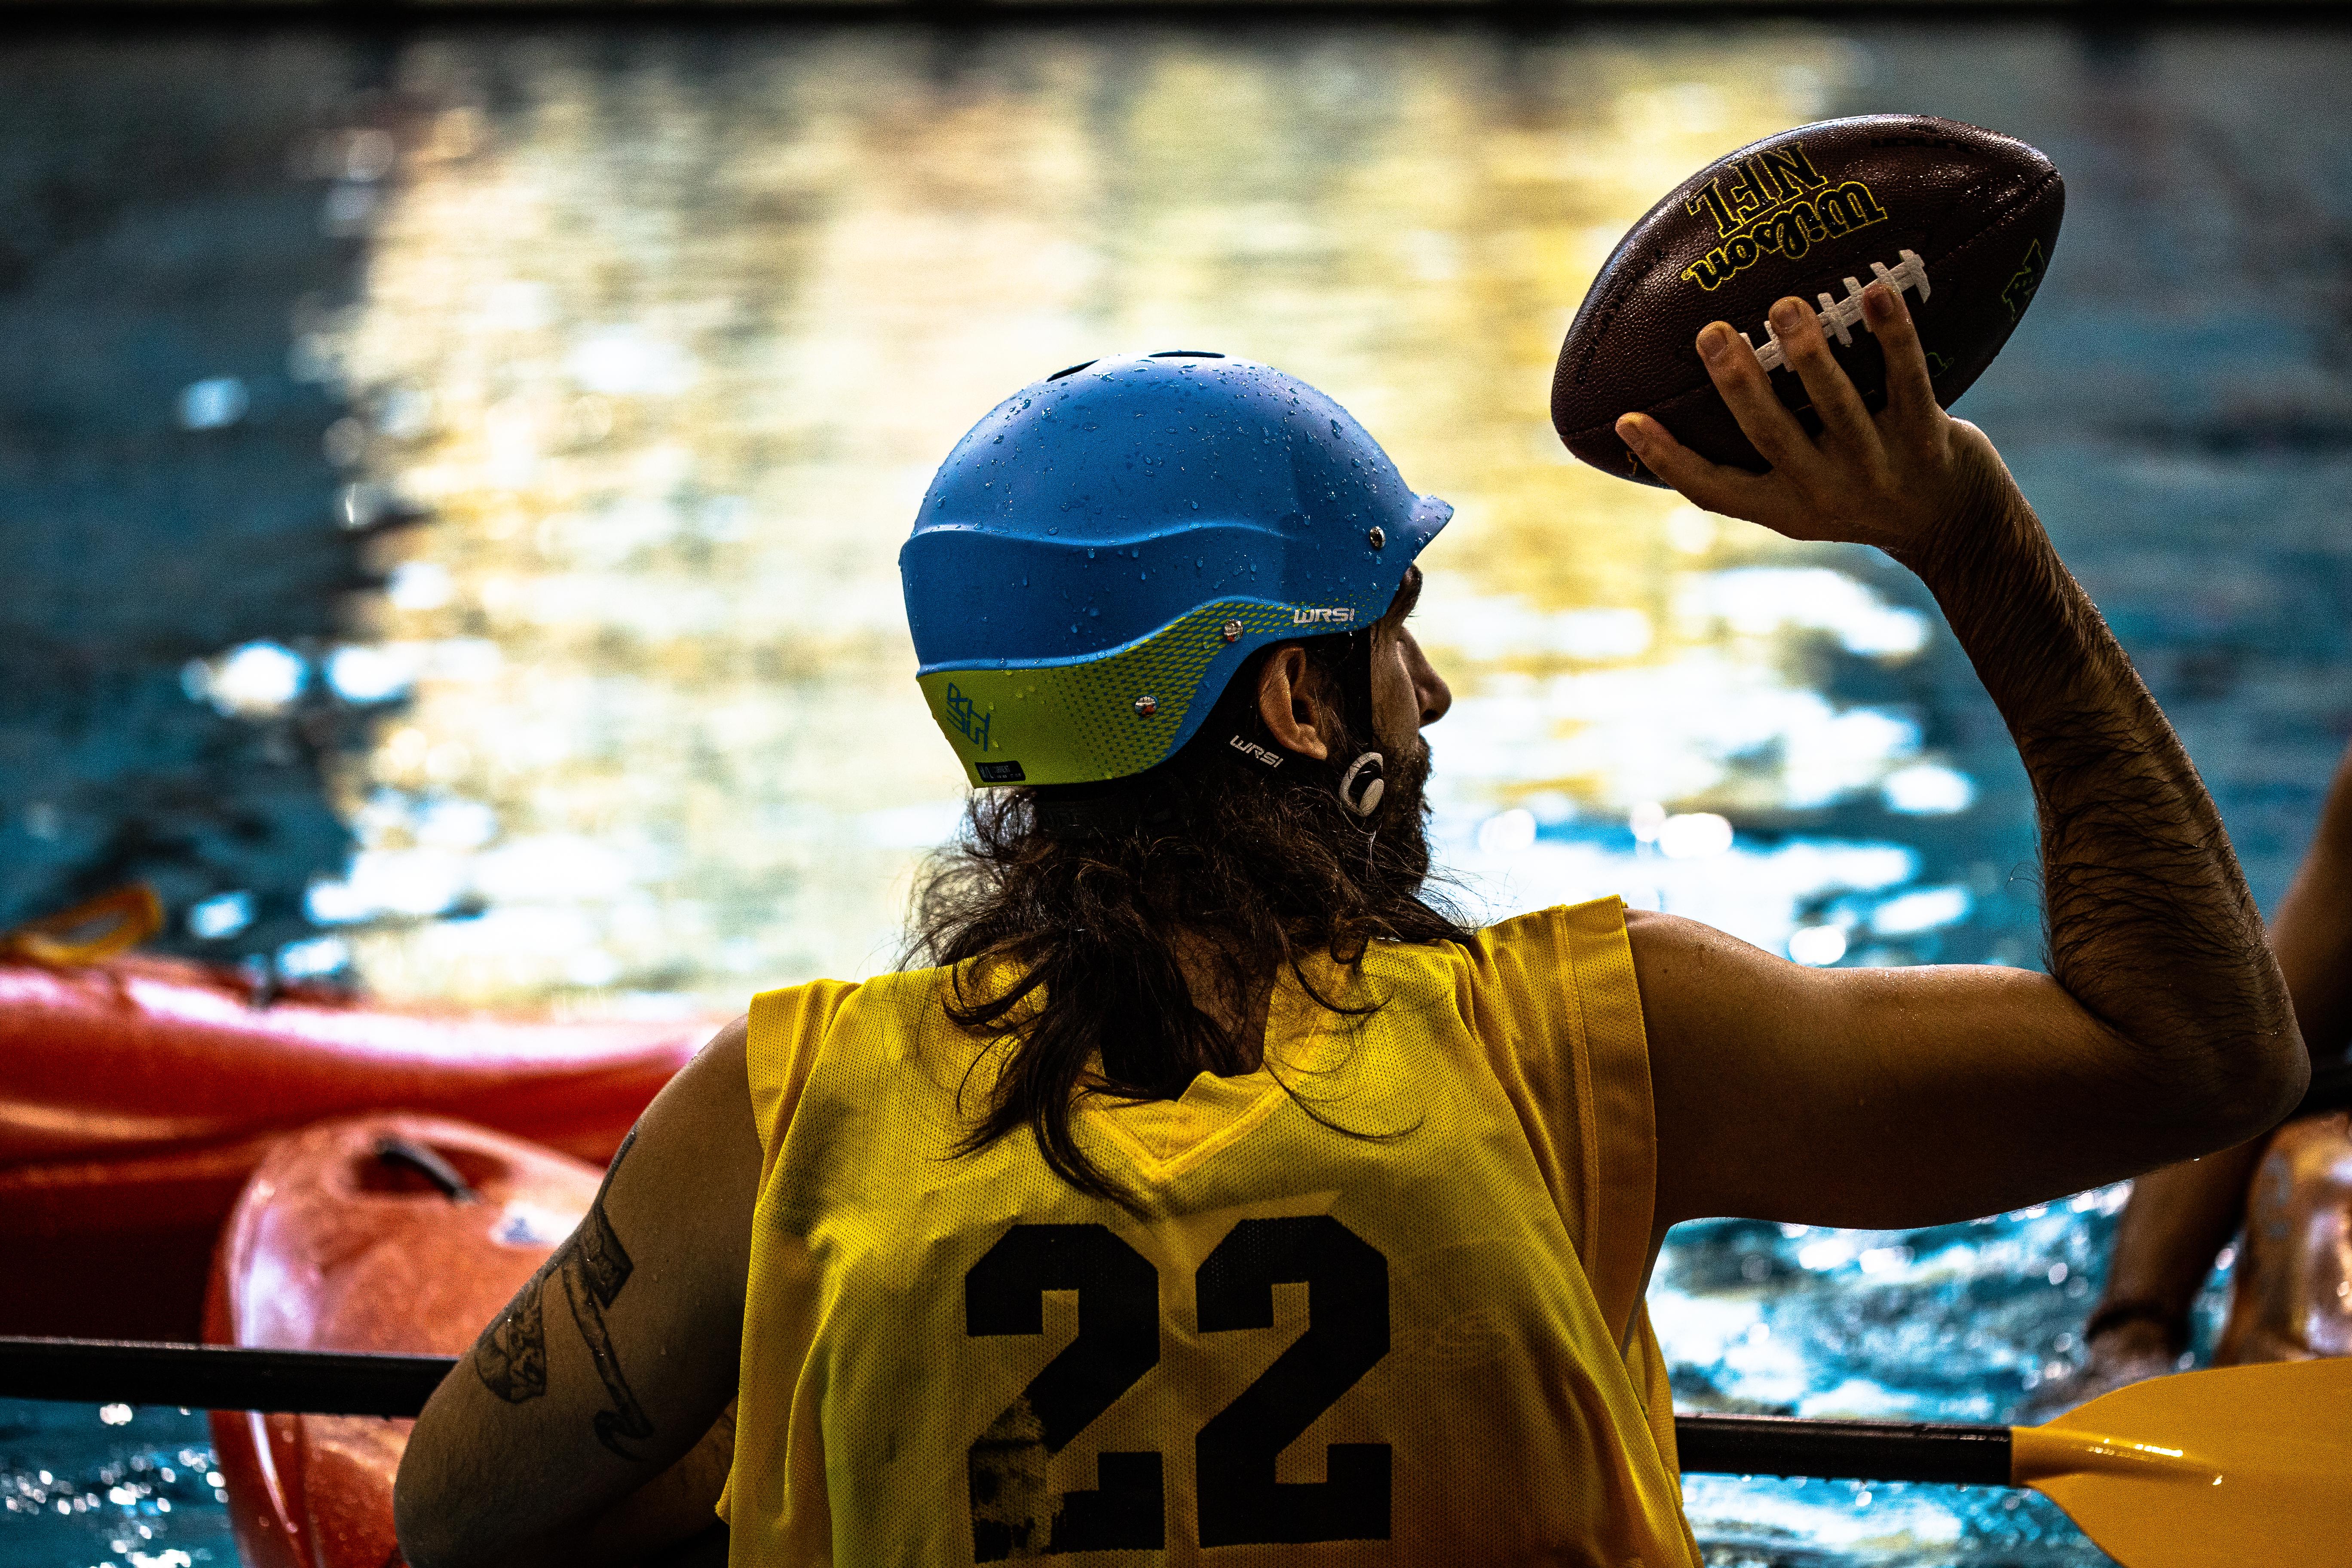 Kayak Football Tournament.